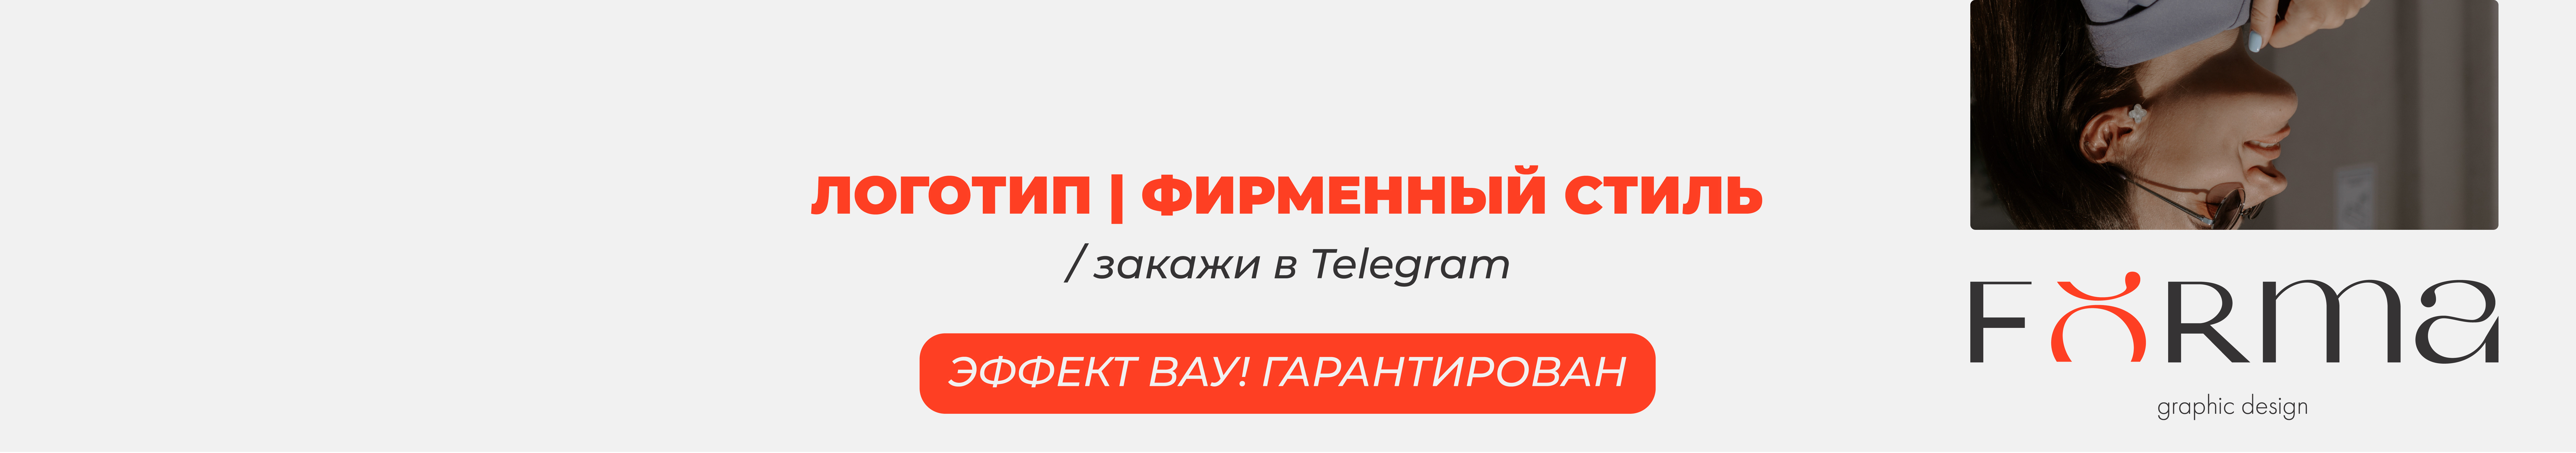 Дарья Исаченко's profile banner